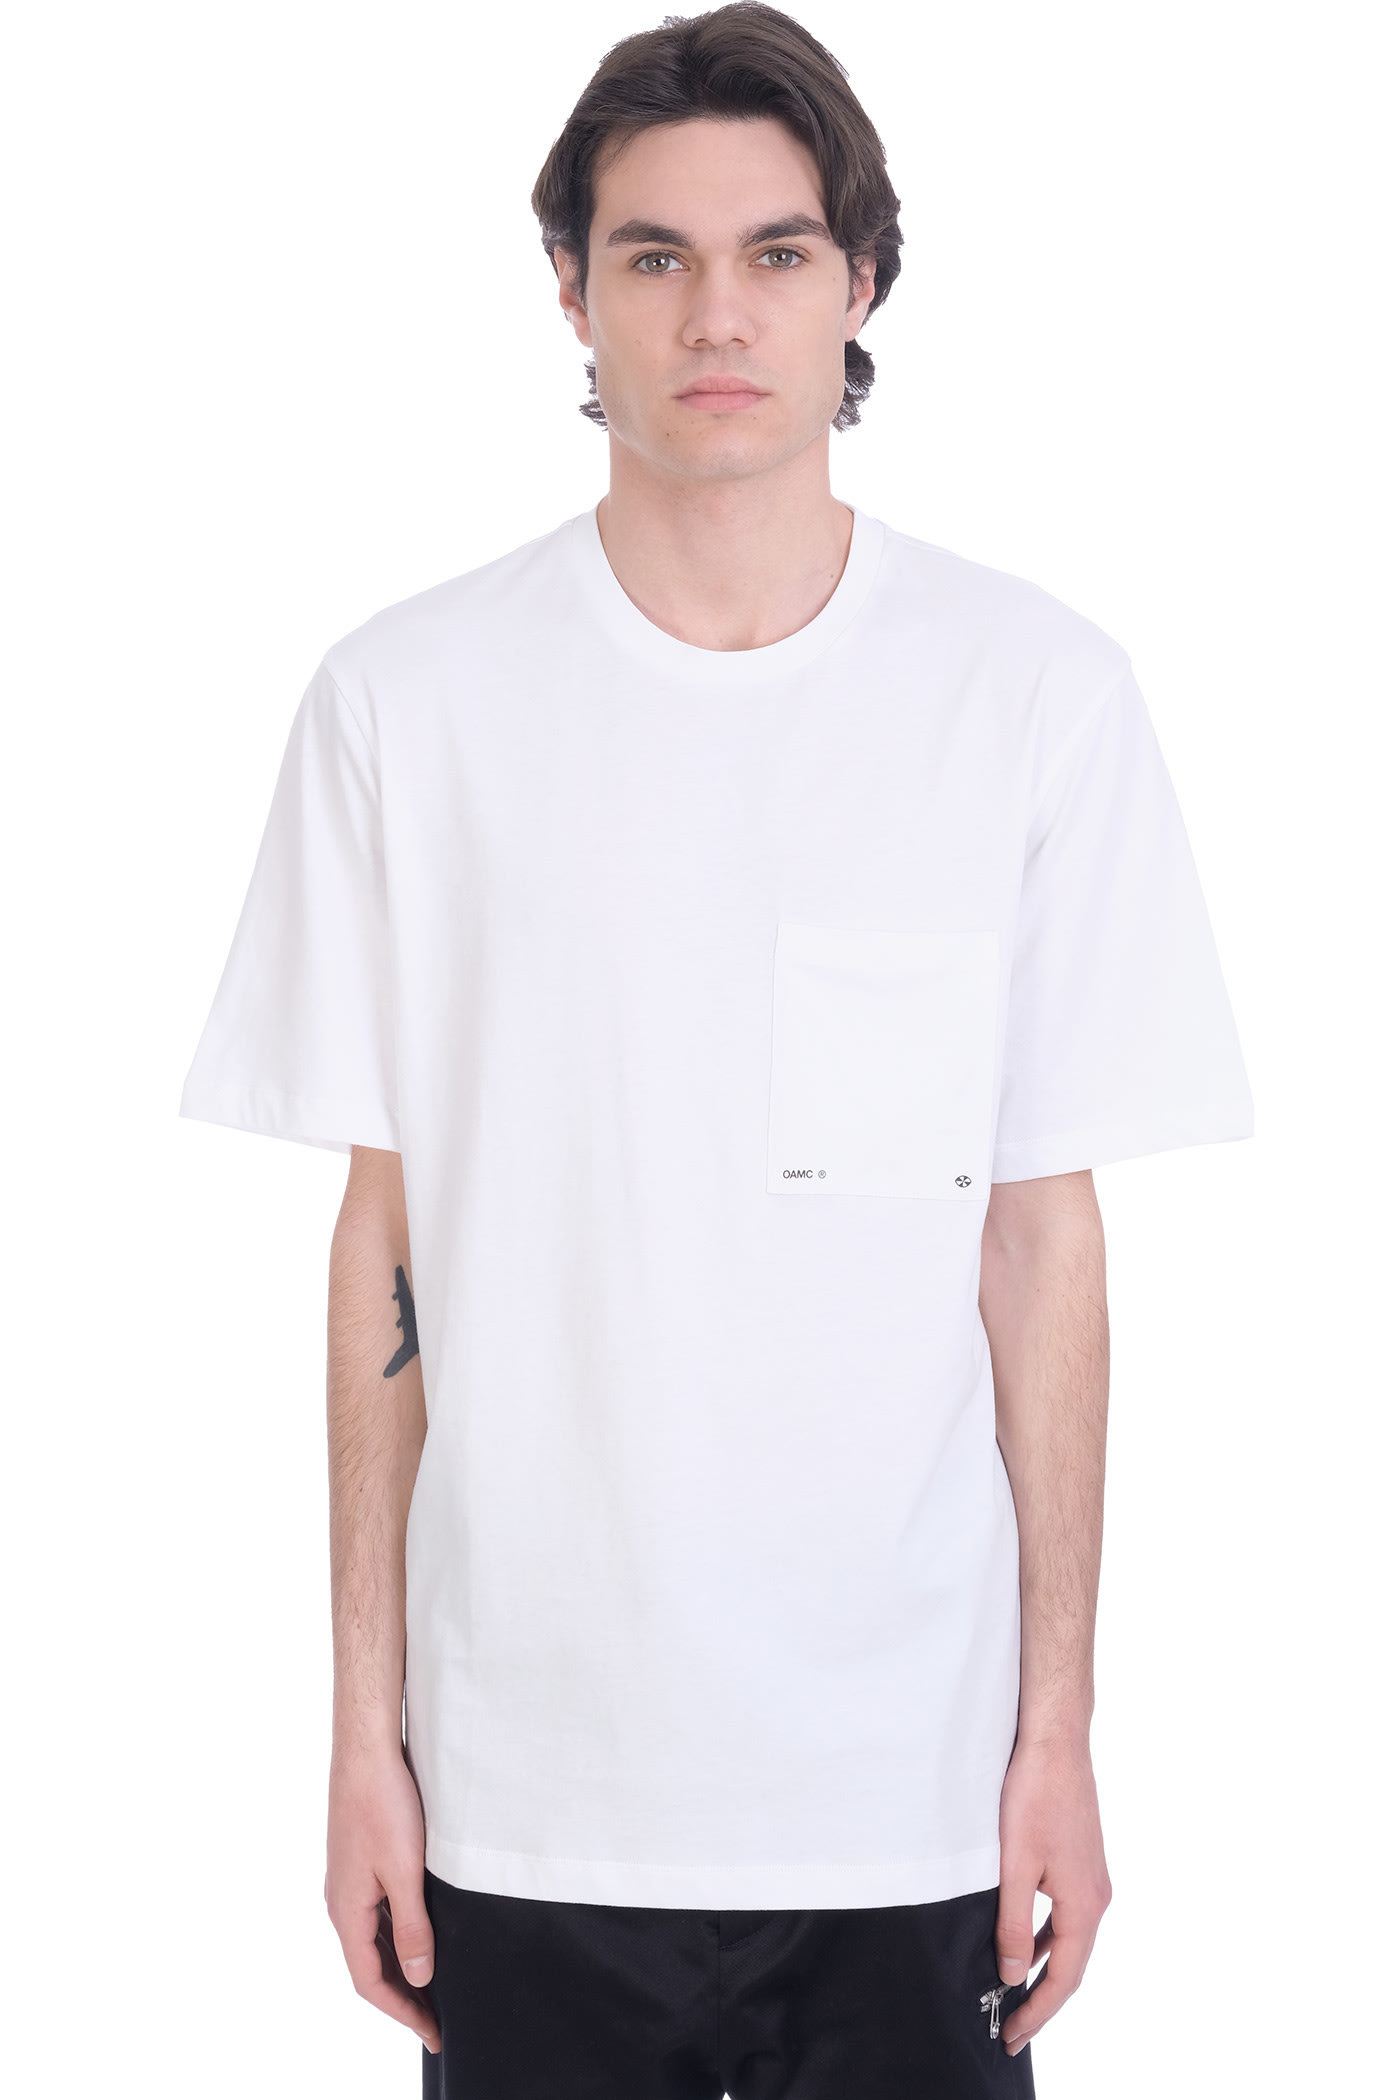 OAMC Logo Pocket T-shirt In White Cotton